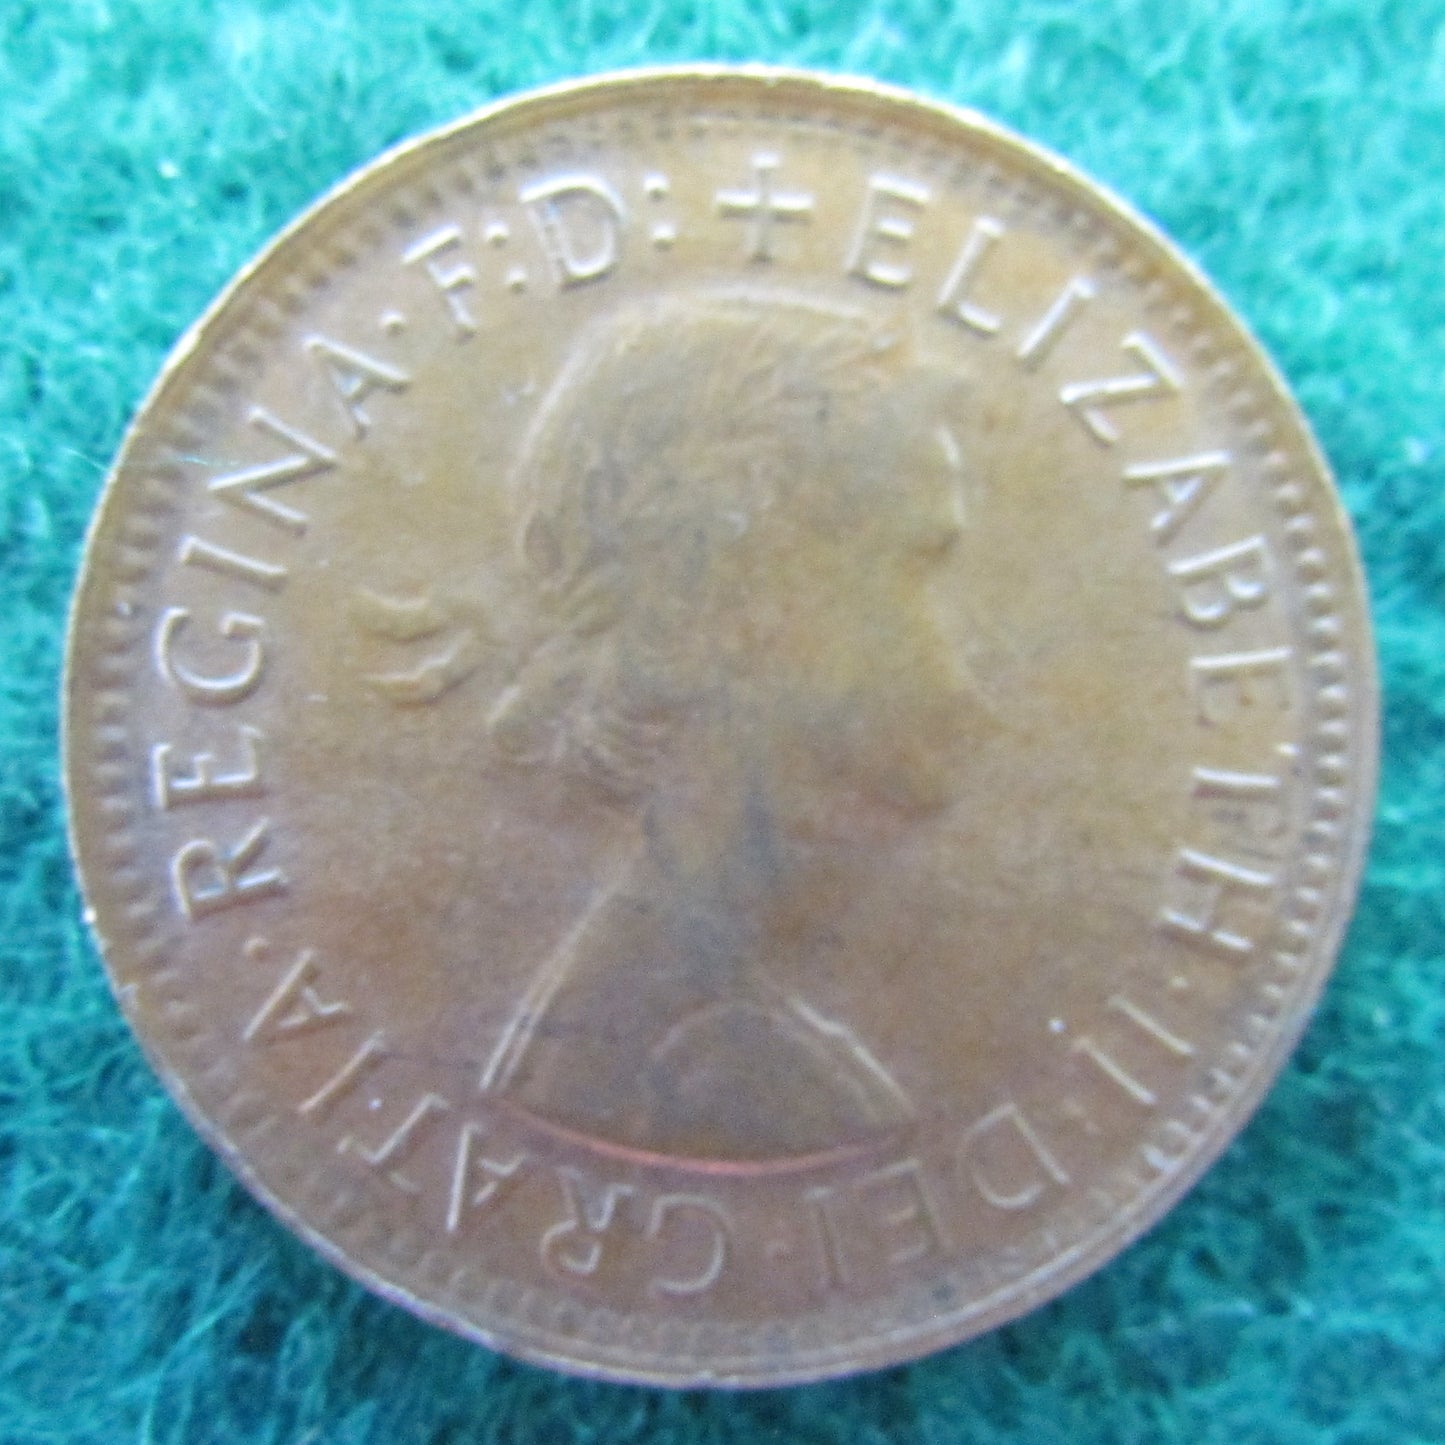 Australian 1962 1/2d Half Penny Queen Elizabeth II Coin